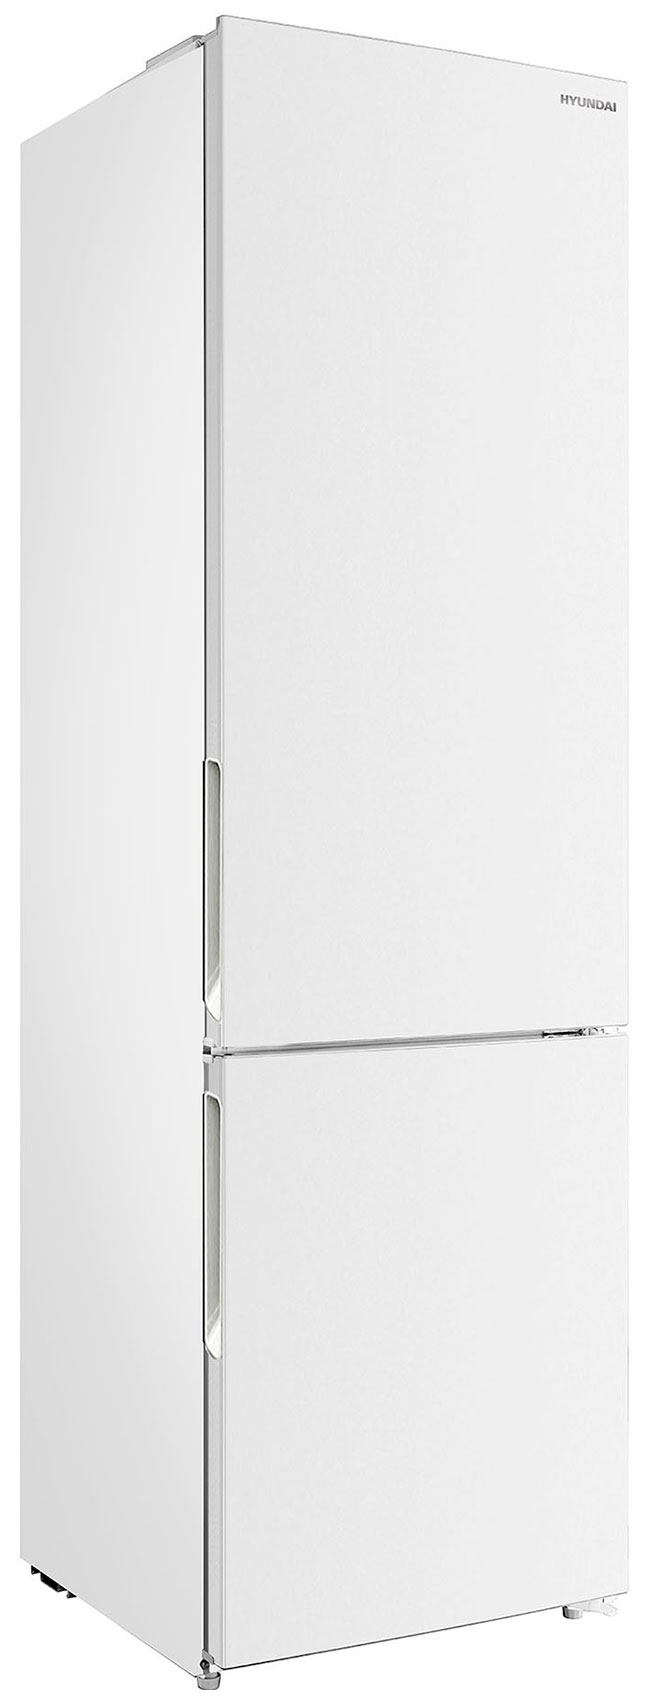 Двухкамерный холодильник Hyundai CC3593FWT белый двухкамерный холодильник hyundai cc3595fwt белый